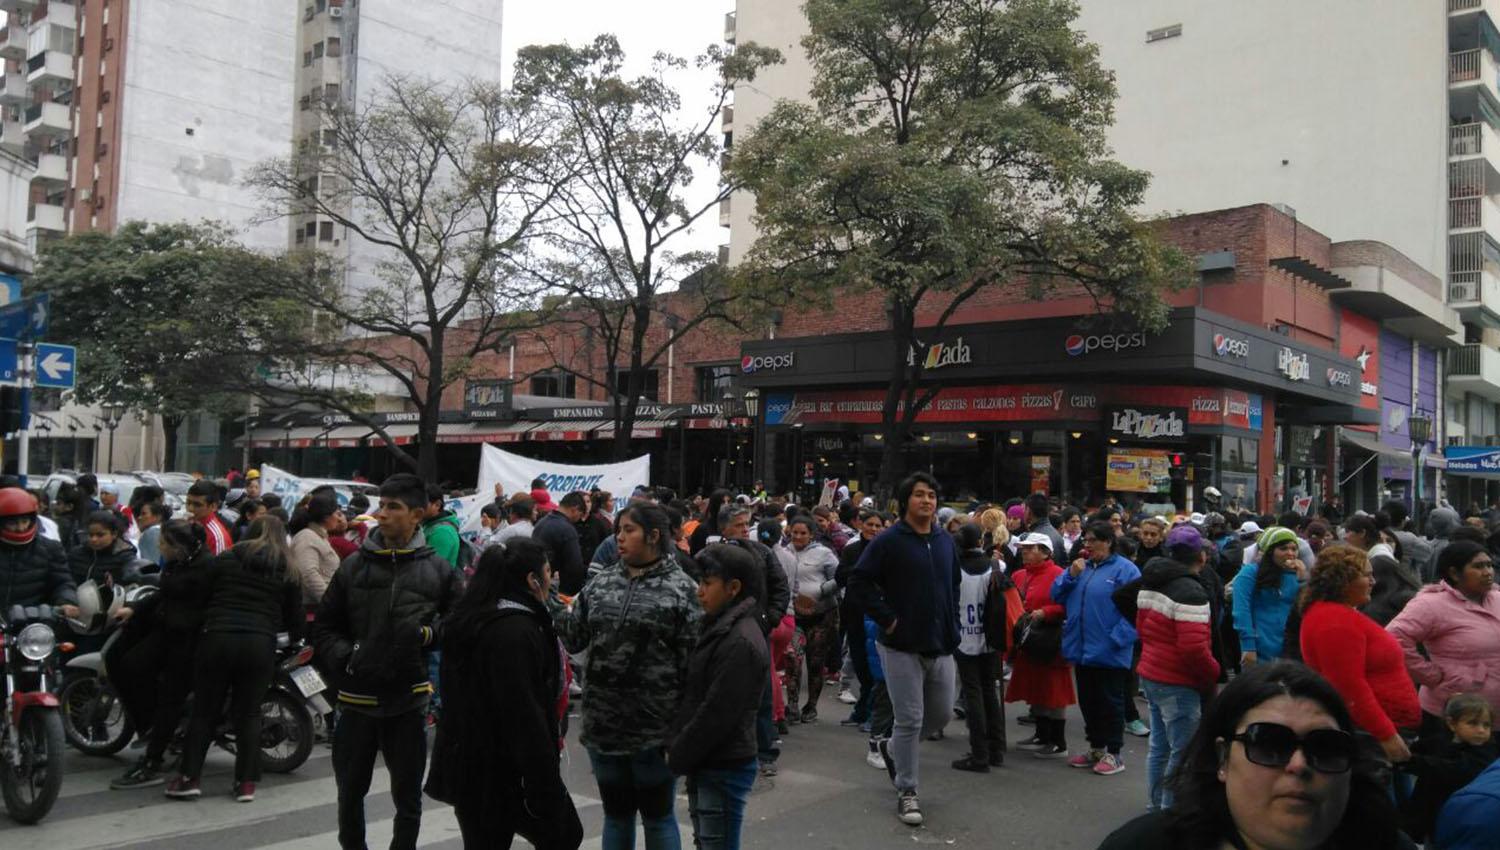 PIQUETE. Manifestantes cortan el tránsito en 24 y 25. LA GACETA / FOTO DE JULIO CORONEL